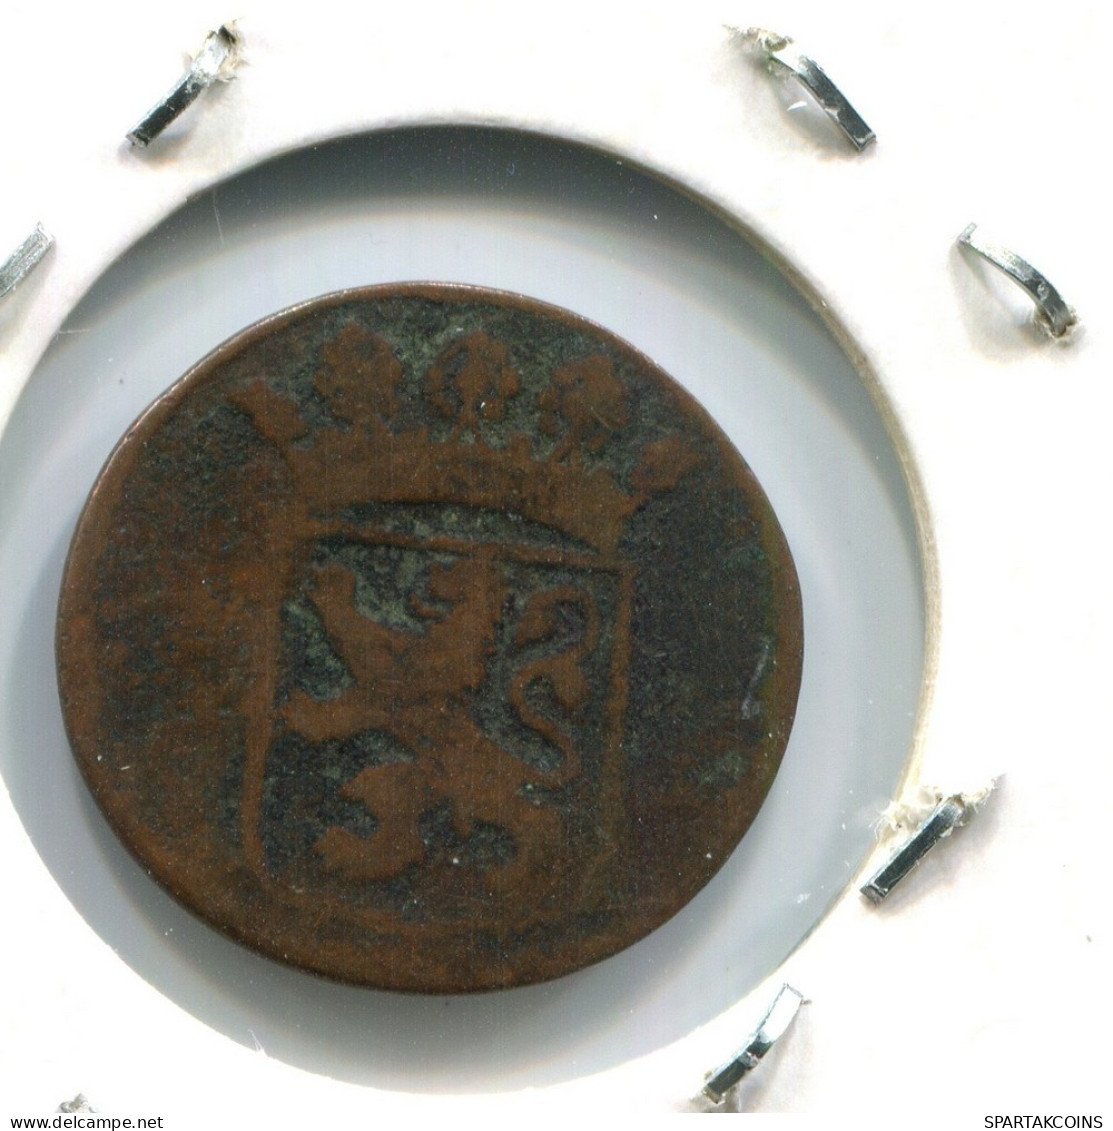 1746 HOLLAND VOC DUIT NEERLANDÉS NETHERLANDS Colonial Moneda #VOC1851.10.E.A - Niederländisch-Indien